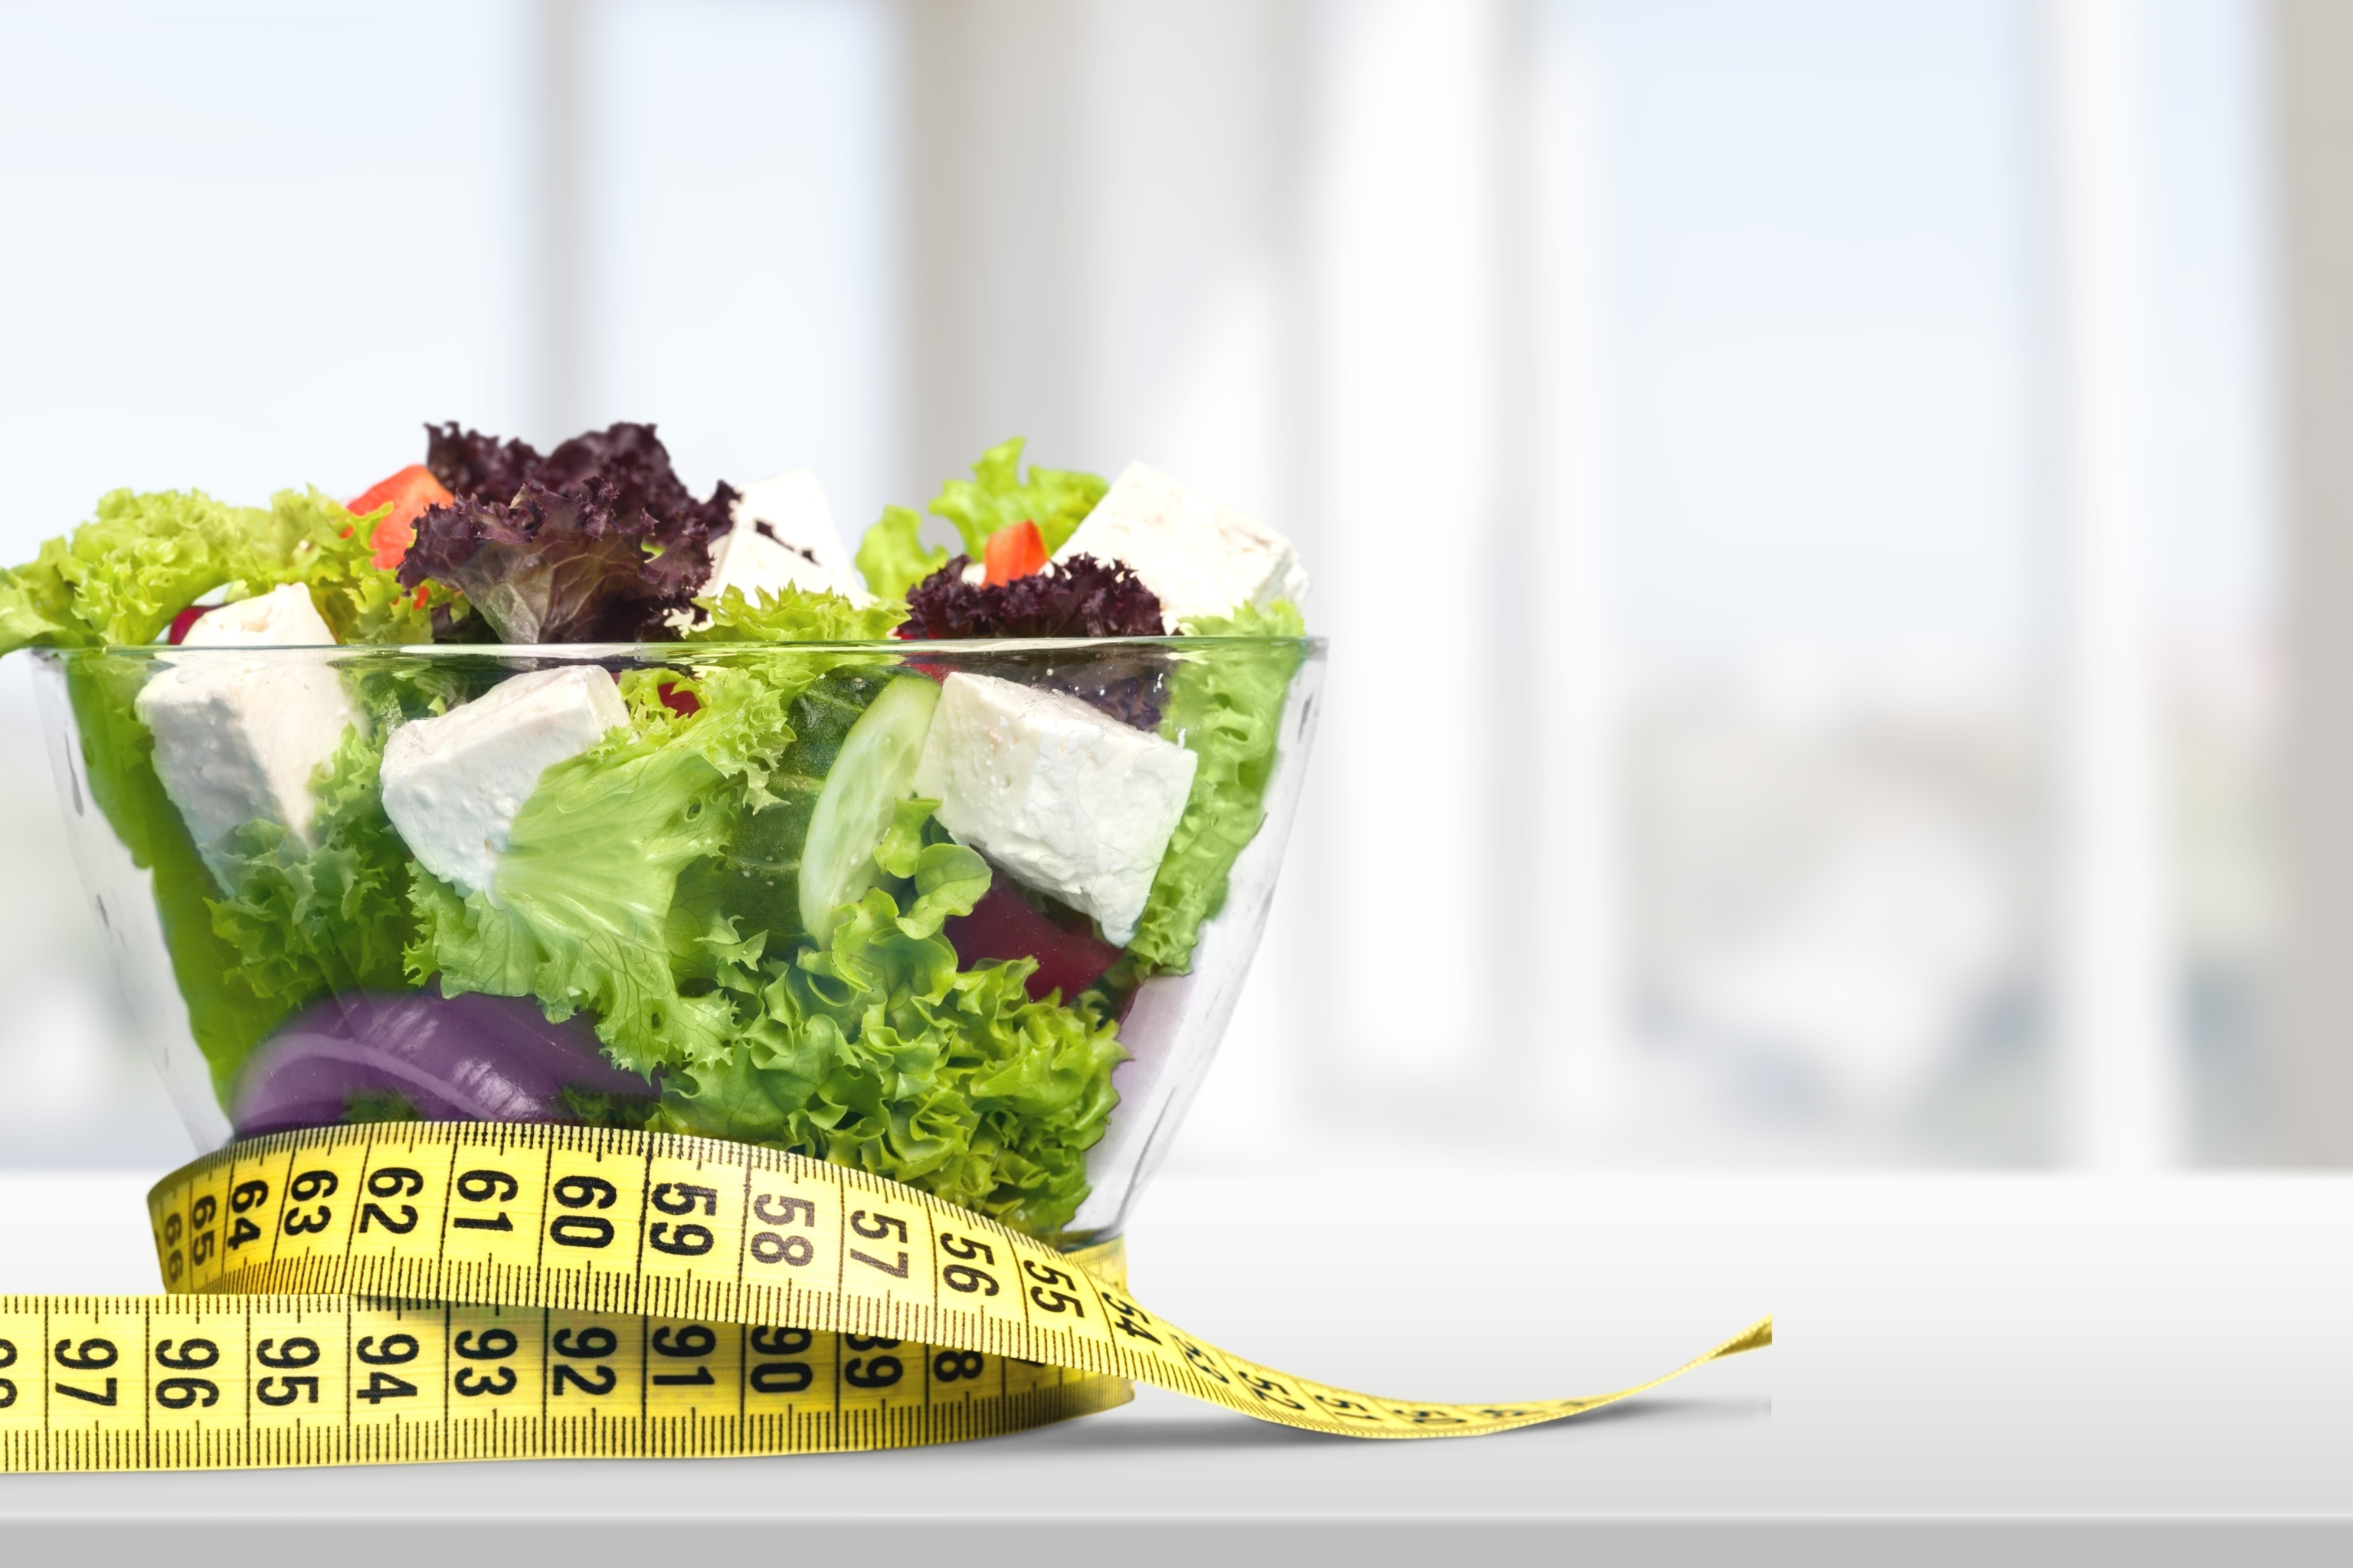 Cules son las dietas ms populares? Los nutricionistas advierten sobre sus riesgos